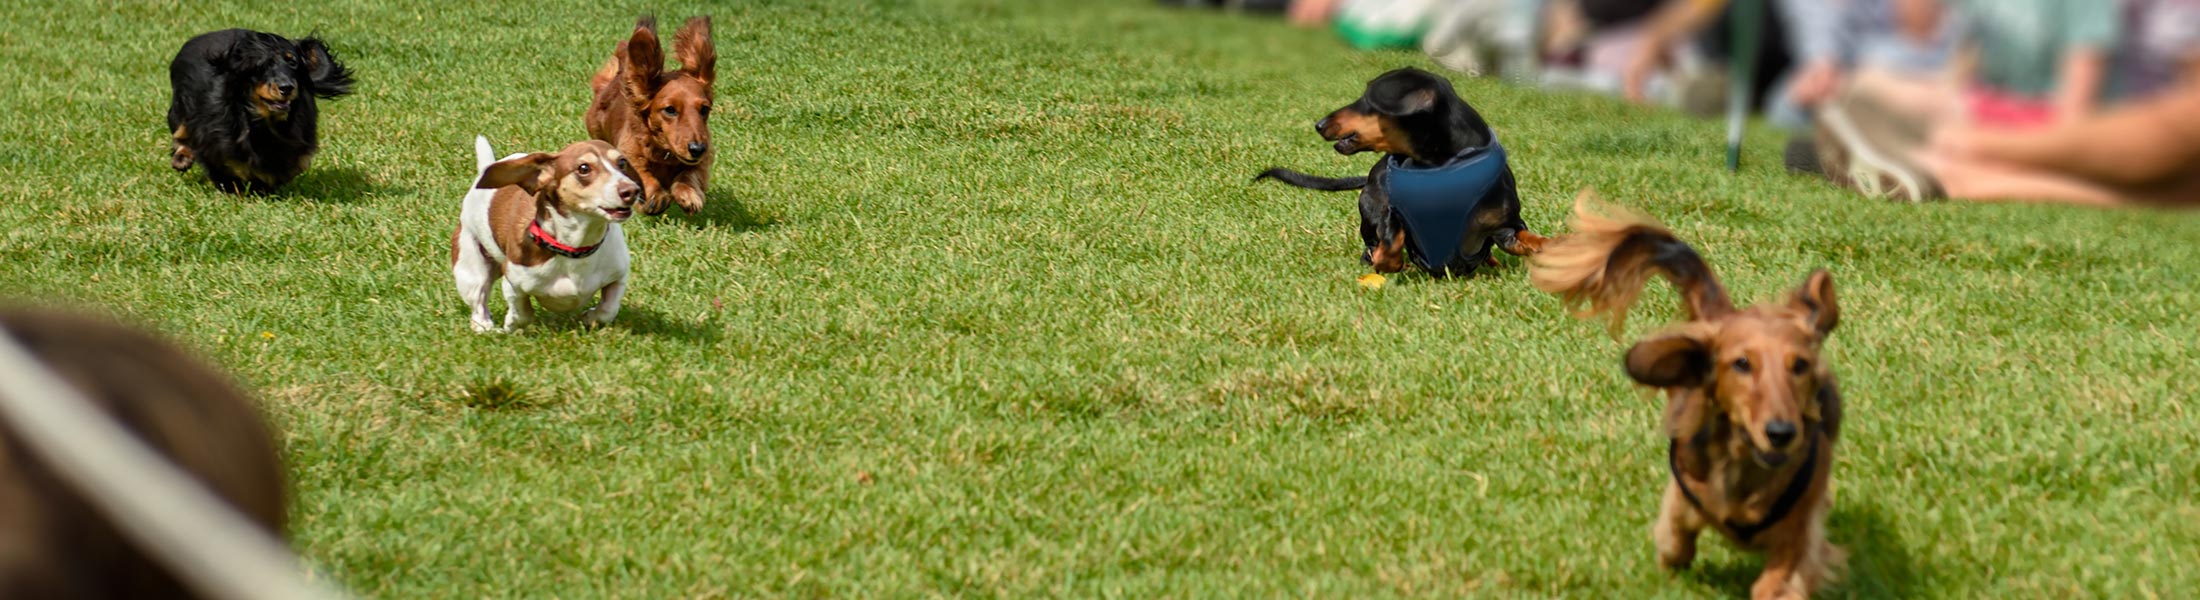 Photo of wiener dogs racing